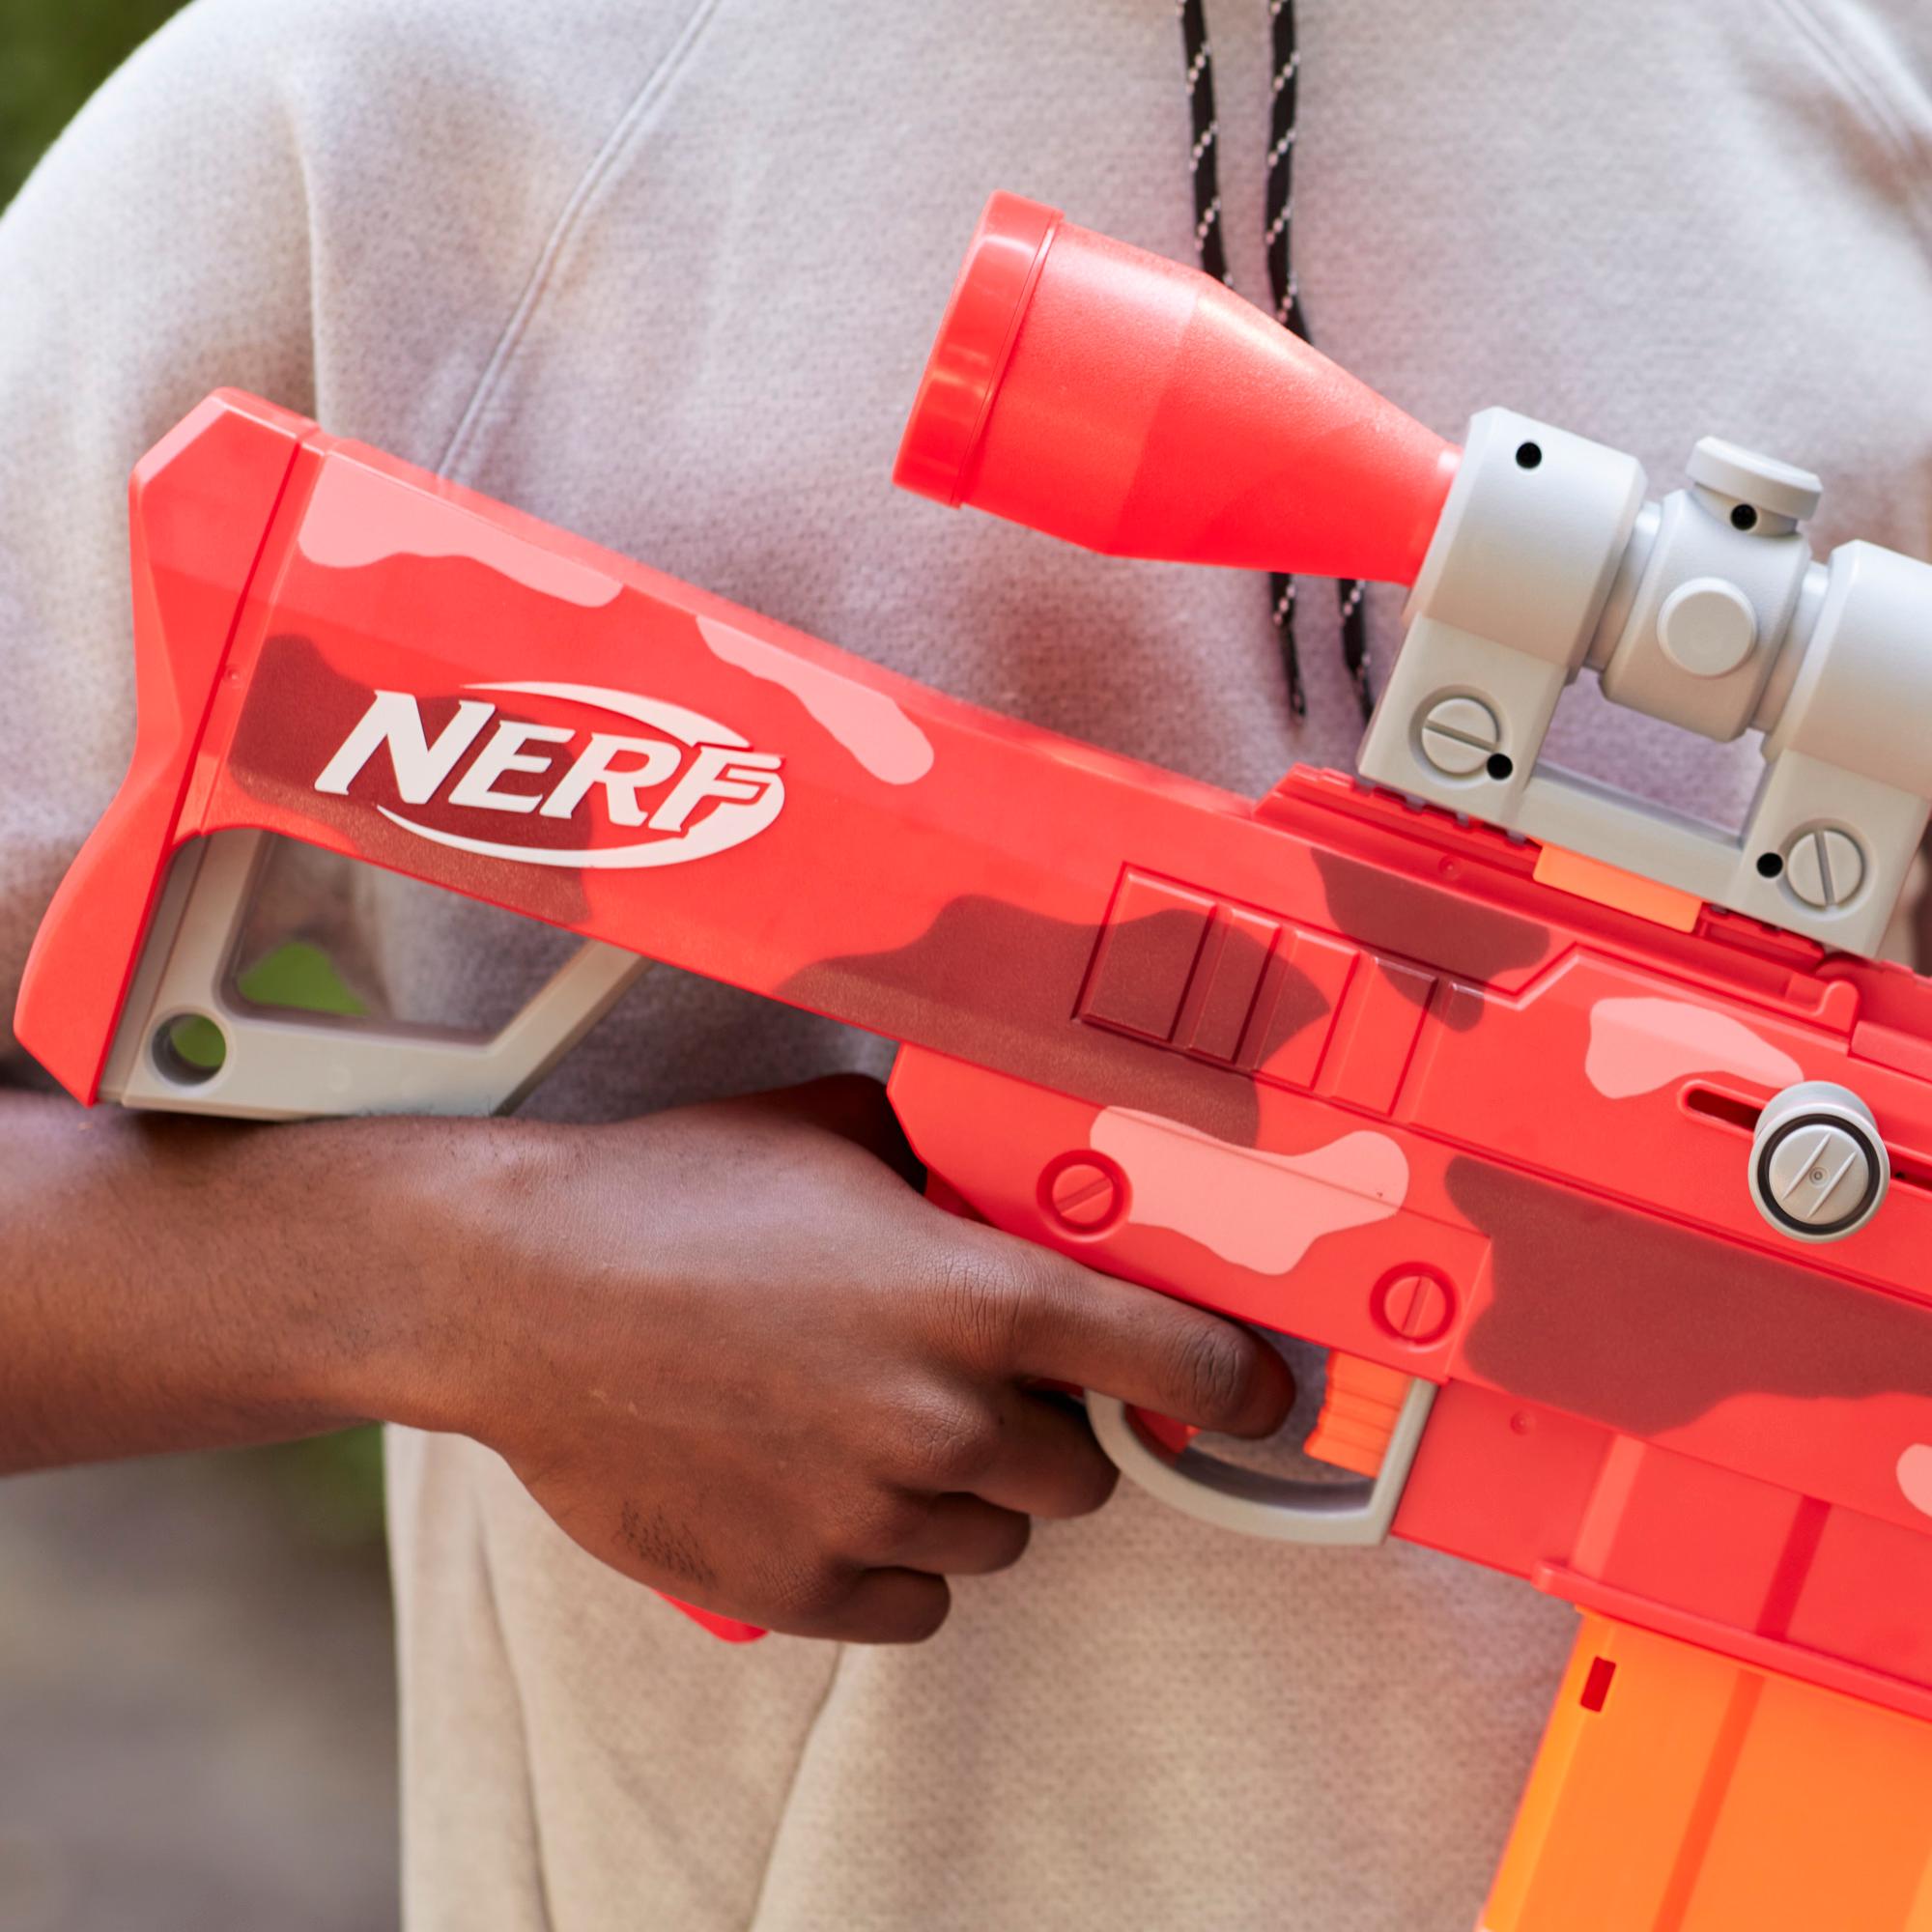 Nerf Fortnite Heavy SR Blaster, Longest Nerf Fortnite Blaster Ever, Removable Scope, 6 Nerf Mega Darts, 6-Dart Clip